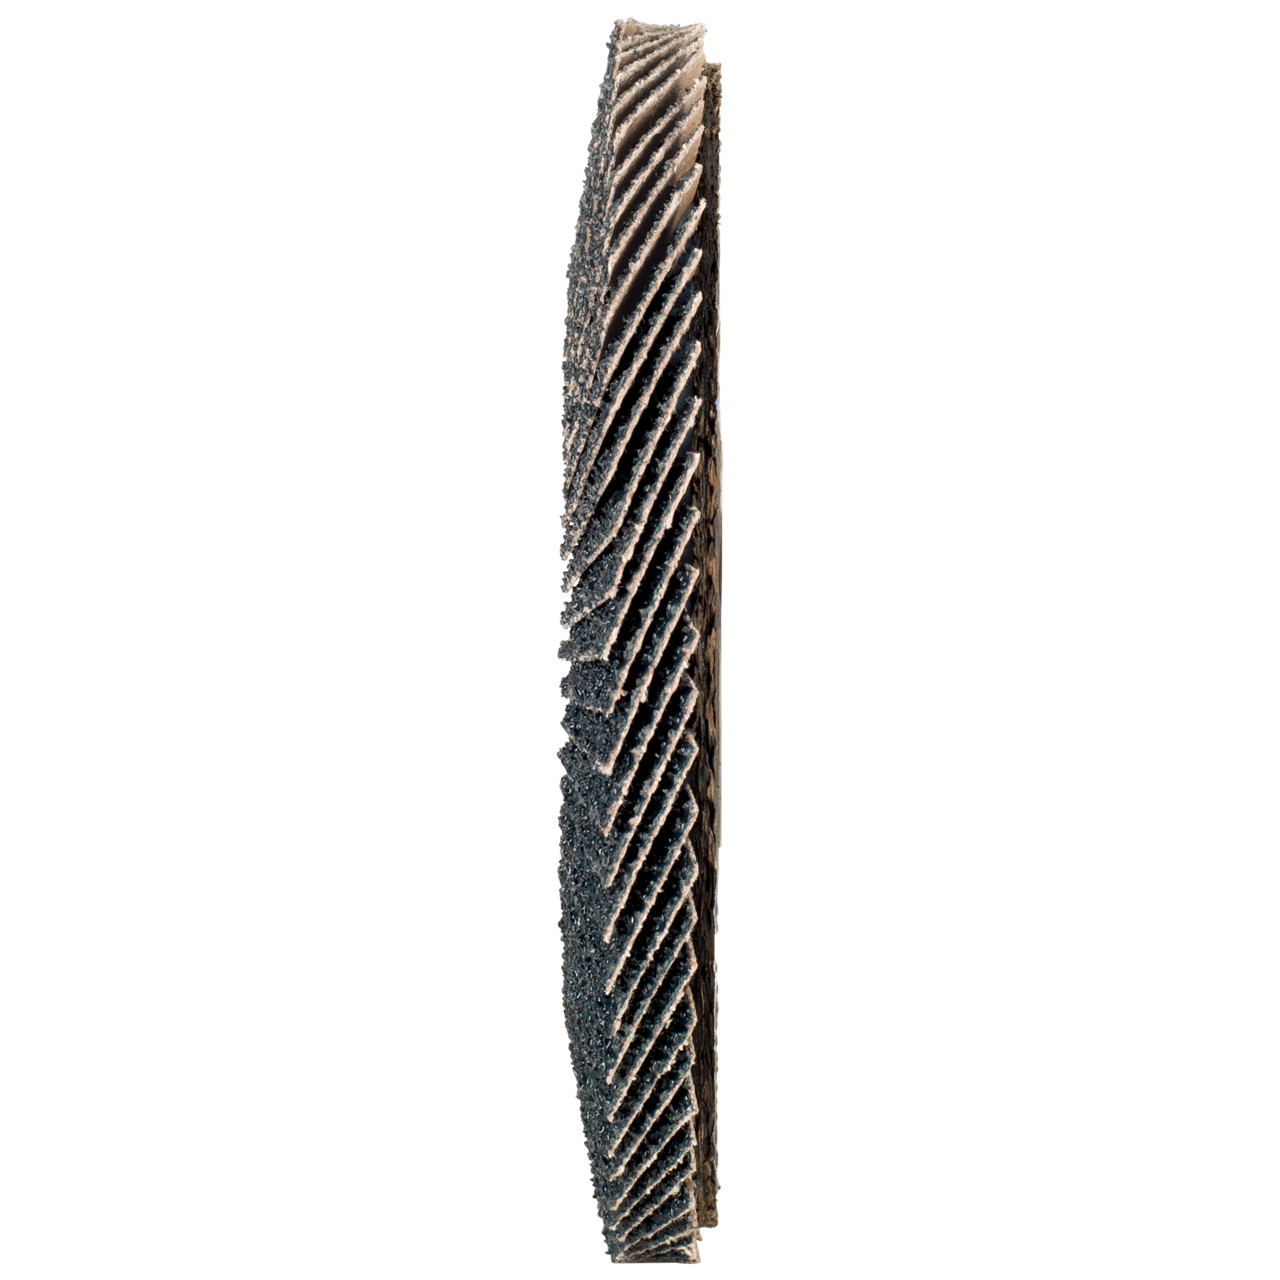 TYROLIT Fächerscheibe DxH 125x22,2 2in1 für Stahl & Edelstahl, P120, Form: 27A - gekröpfte Ausführung (Glasfaserträgerkörperausführung), Art. 643805